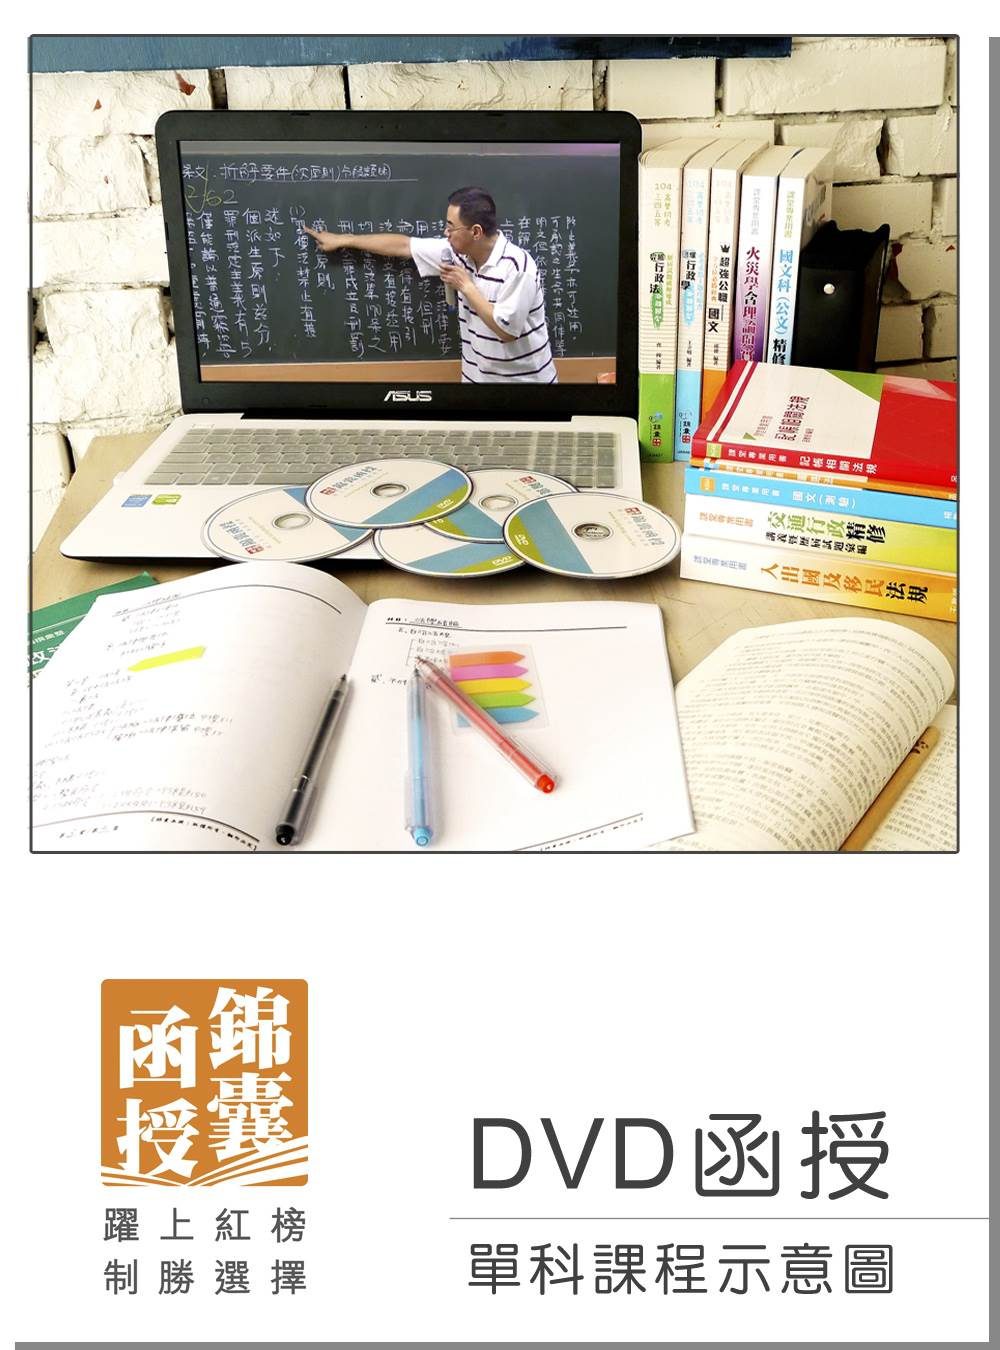 【DVD函授】社會政策與社會立法-單科課程(105版)